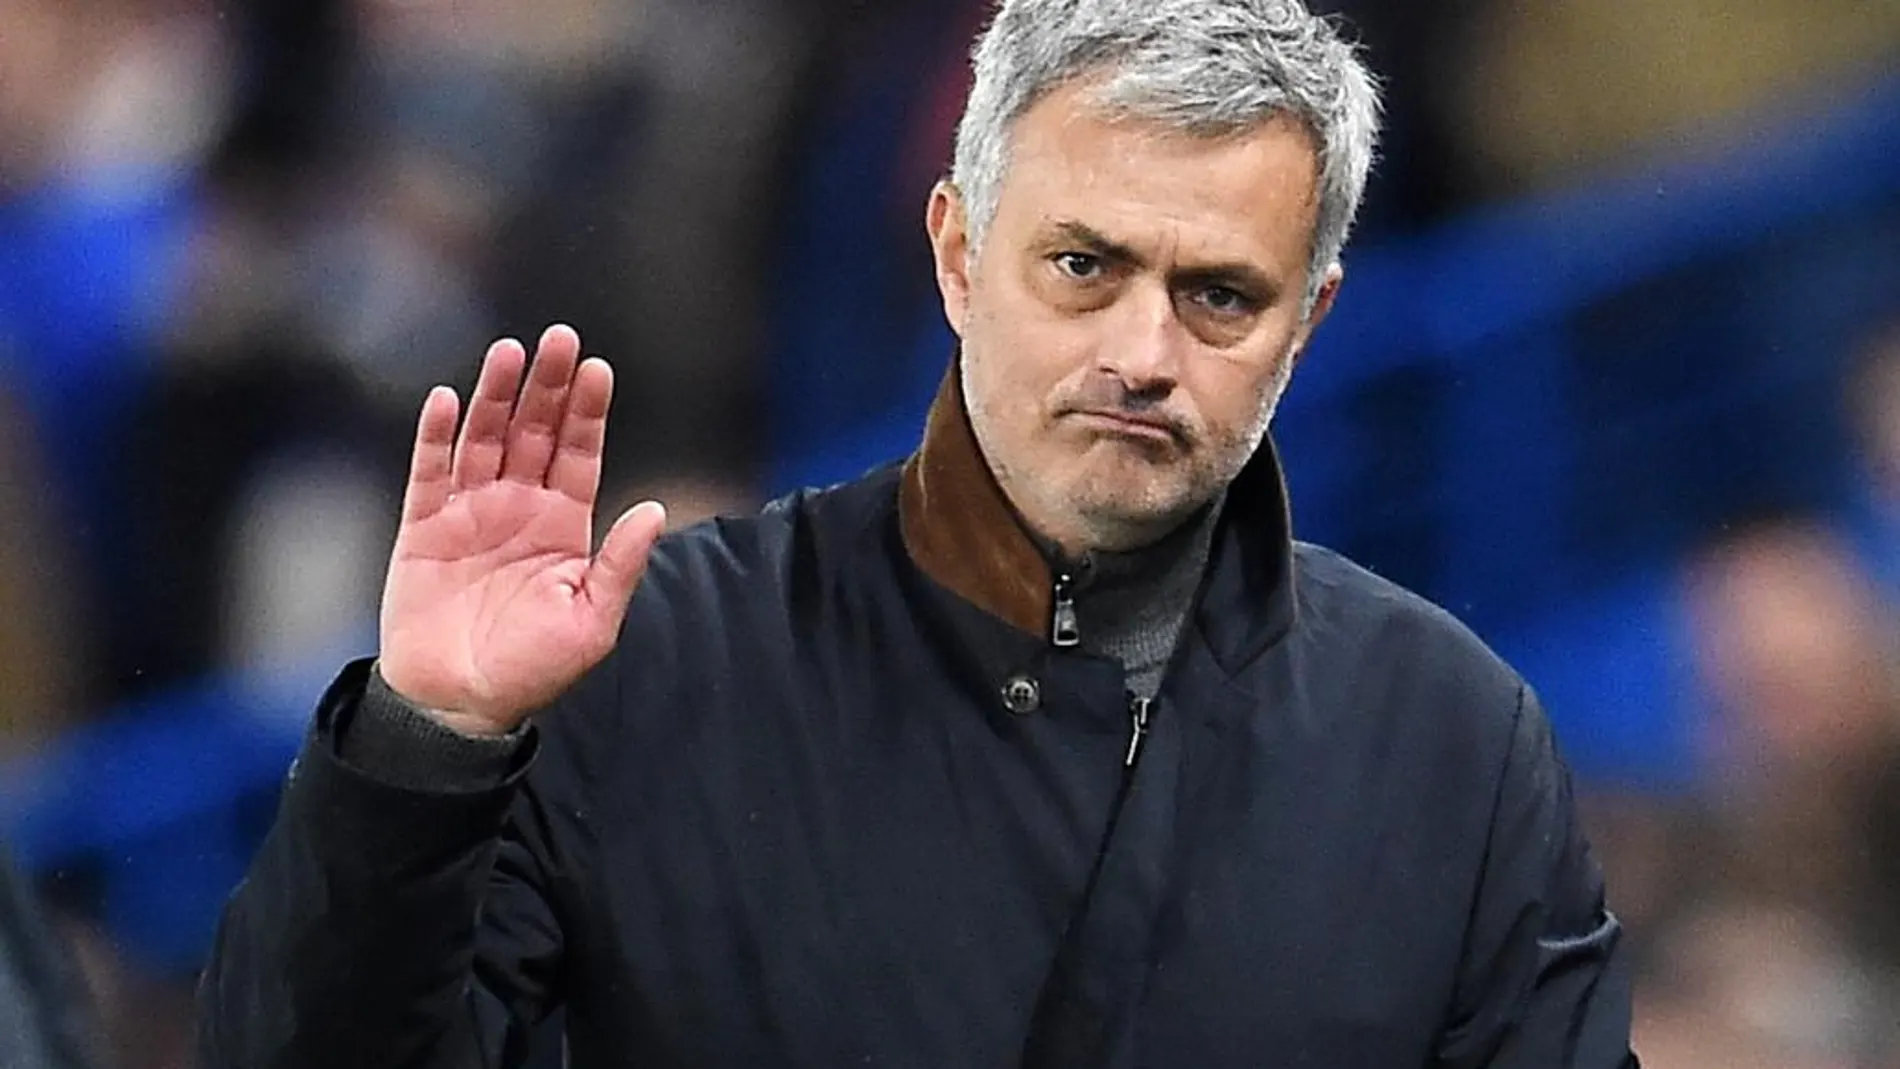 El ya ex entrenador del Chelsea, Jose Mourinho, en Stamford Bridge en Londres.